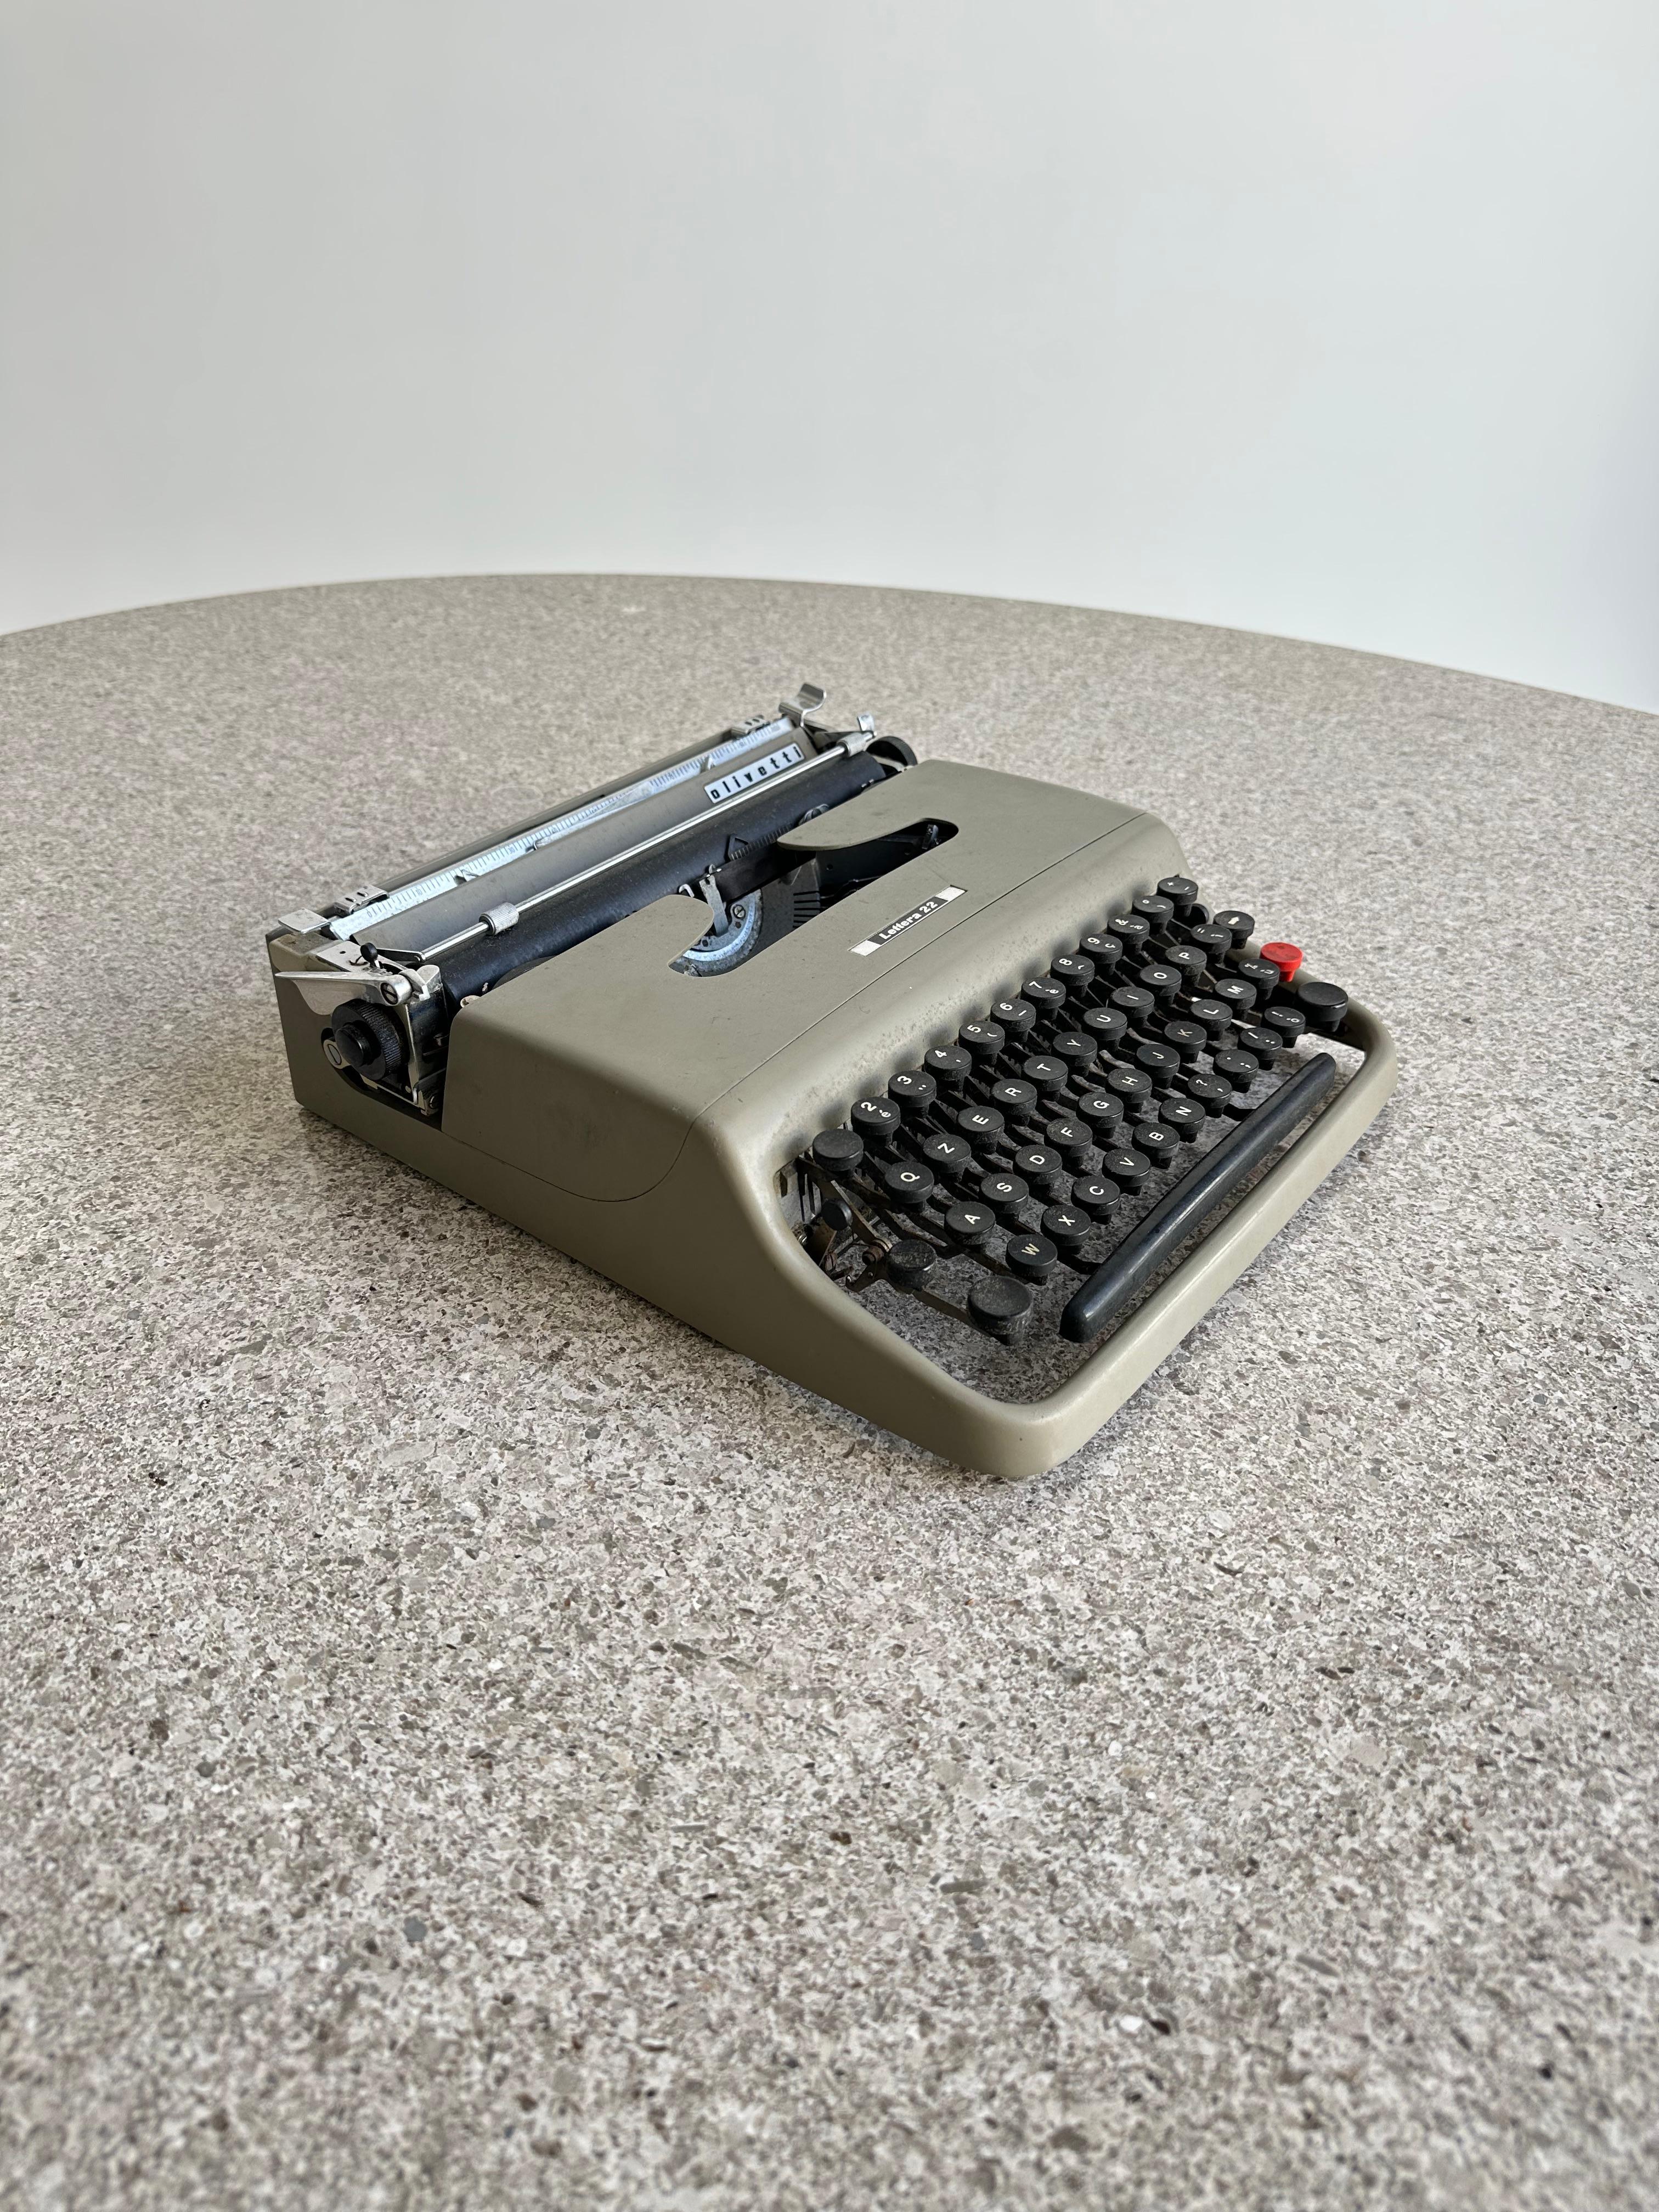 Máquina de escribir portátil Lettera 22, de metal esmaltado y plástico, diseñada por Marcello Nizzoli y producida por el fabricante progresista Olivetti en Italia, hacia 1954. Nizzoli (1887-1969), pintor, artista gráfico y arquitecto, fue director